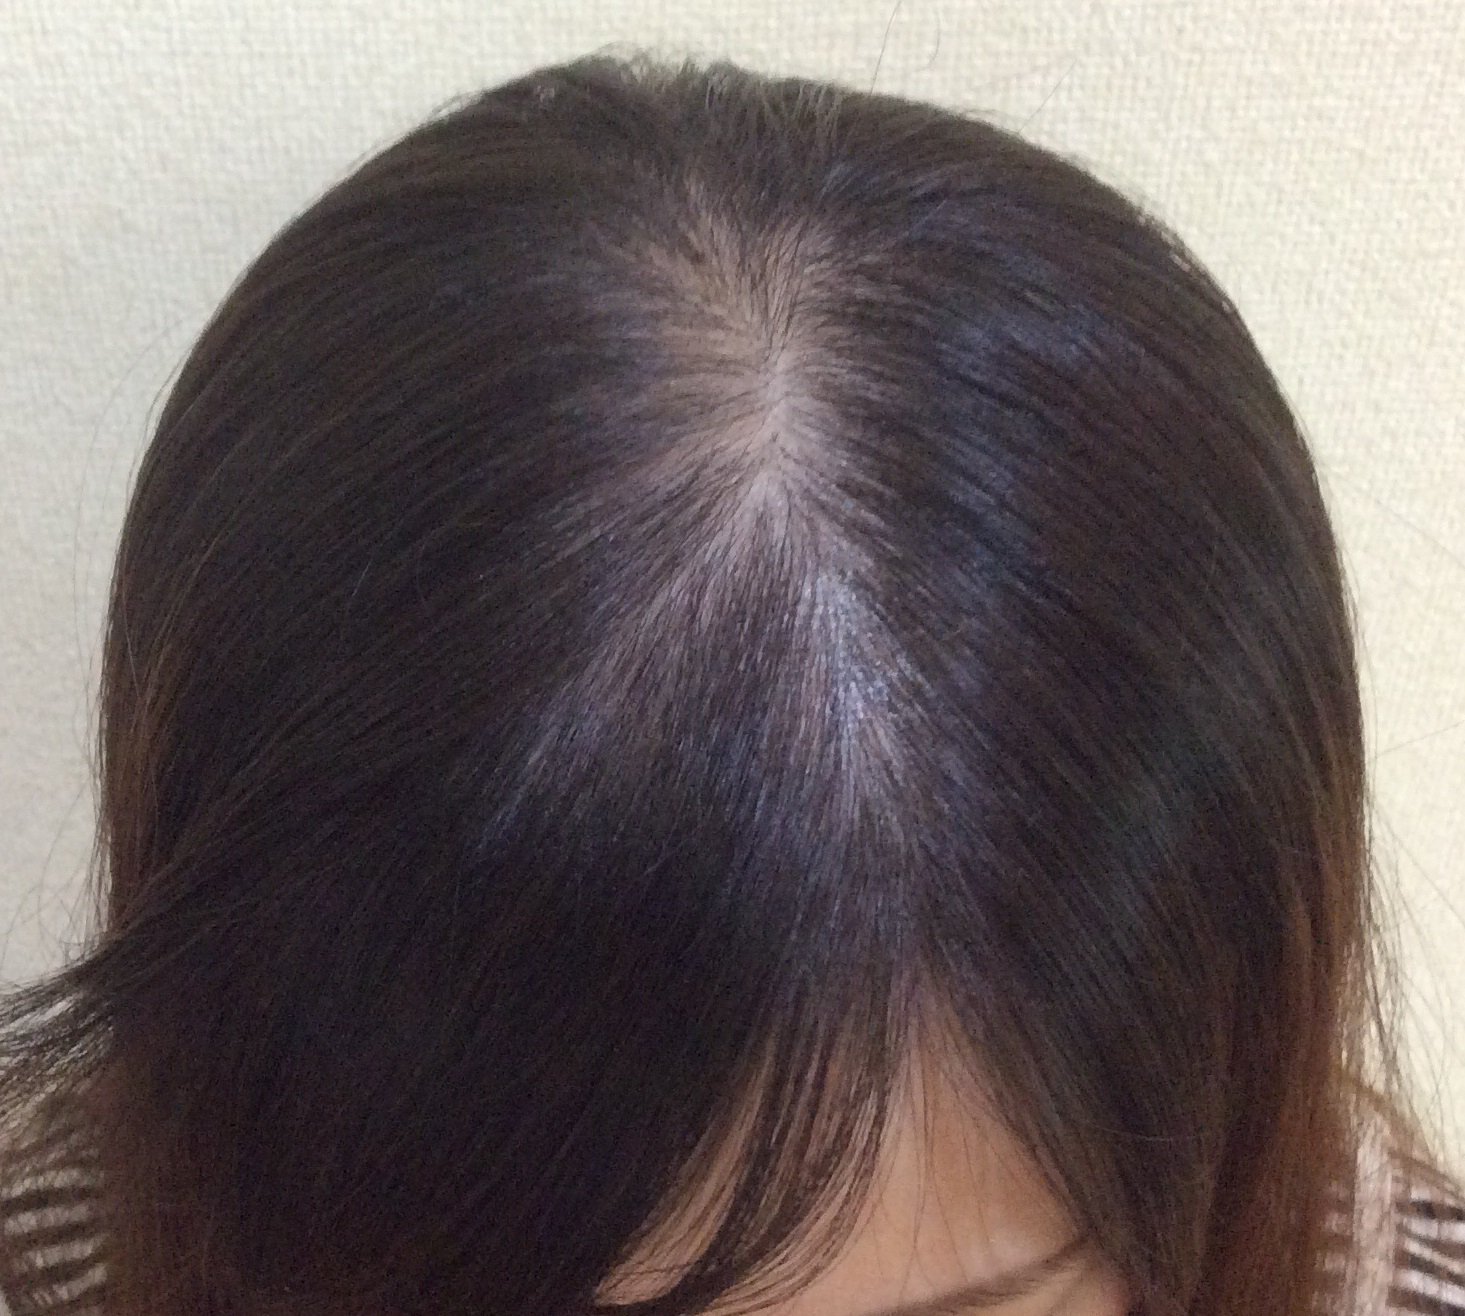 広島発毛・AGA・薄毛治療専門DANTE on Twitter "スーパースカルプでは、女性の薄毛についても対応可能となっております。 薄毛